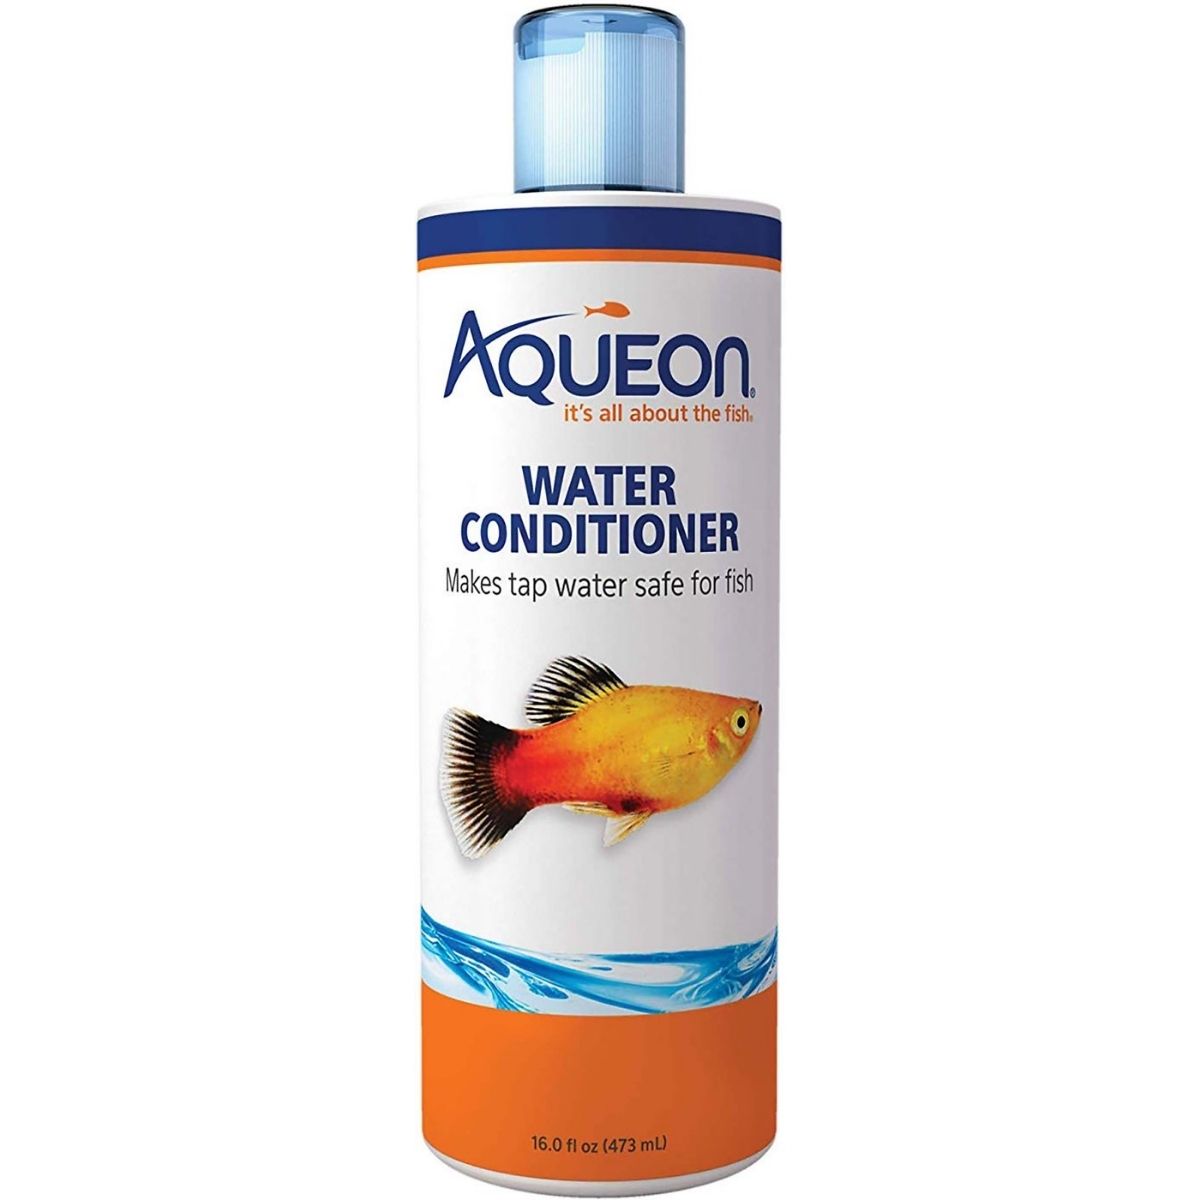 aqueon water conditioner